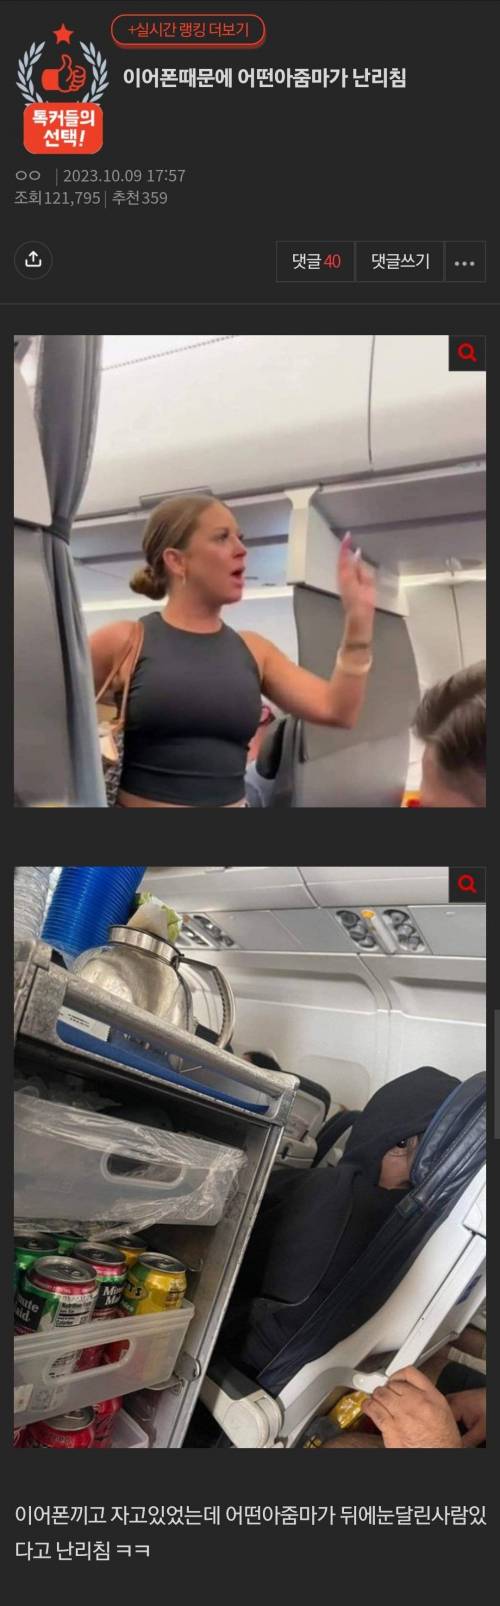 어떤 아줌마가 비행기에서 이어폰낀걸로 난리침.jpg